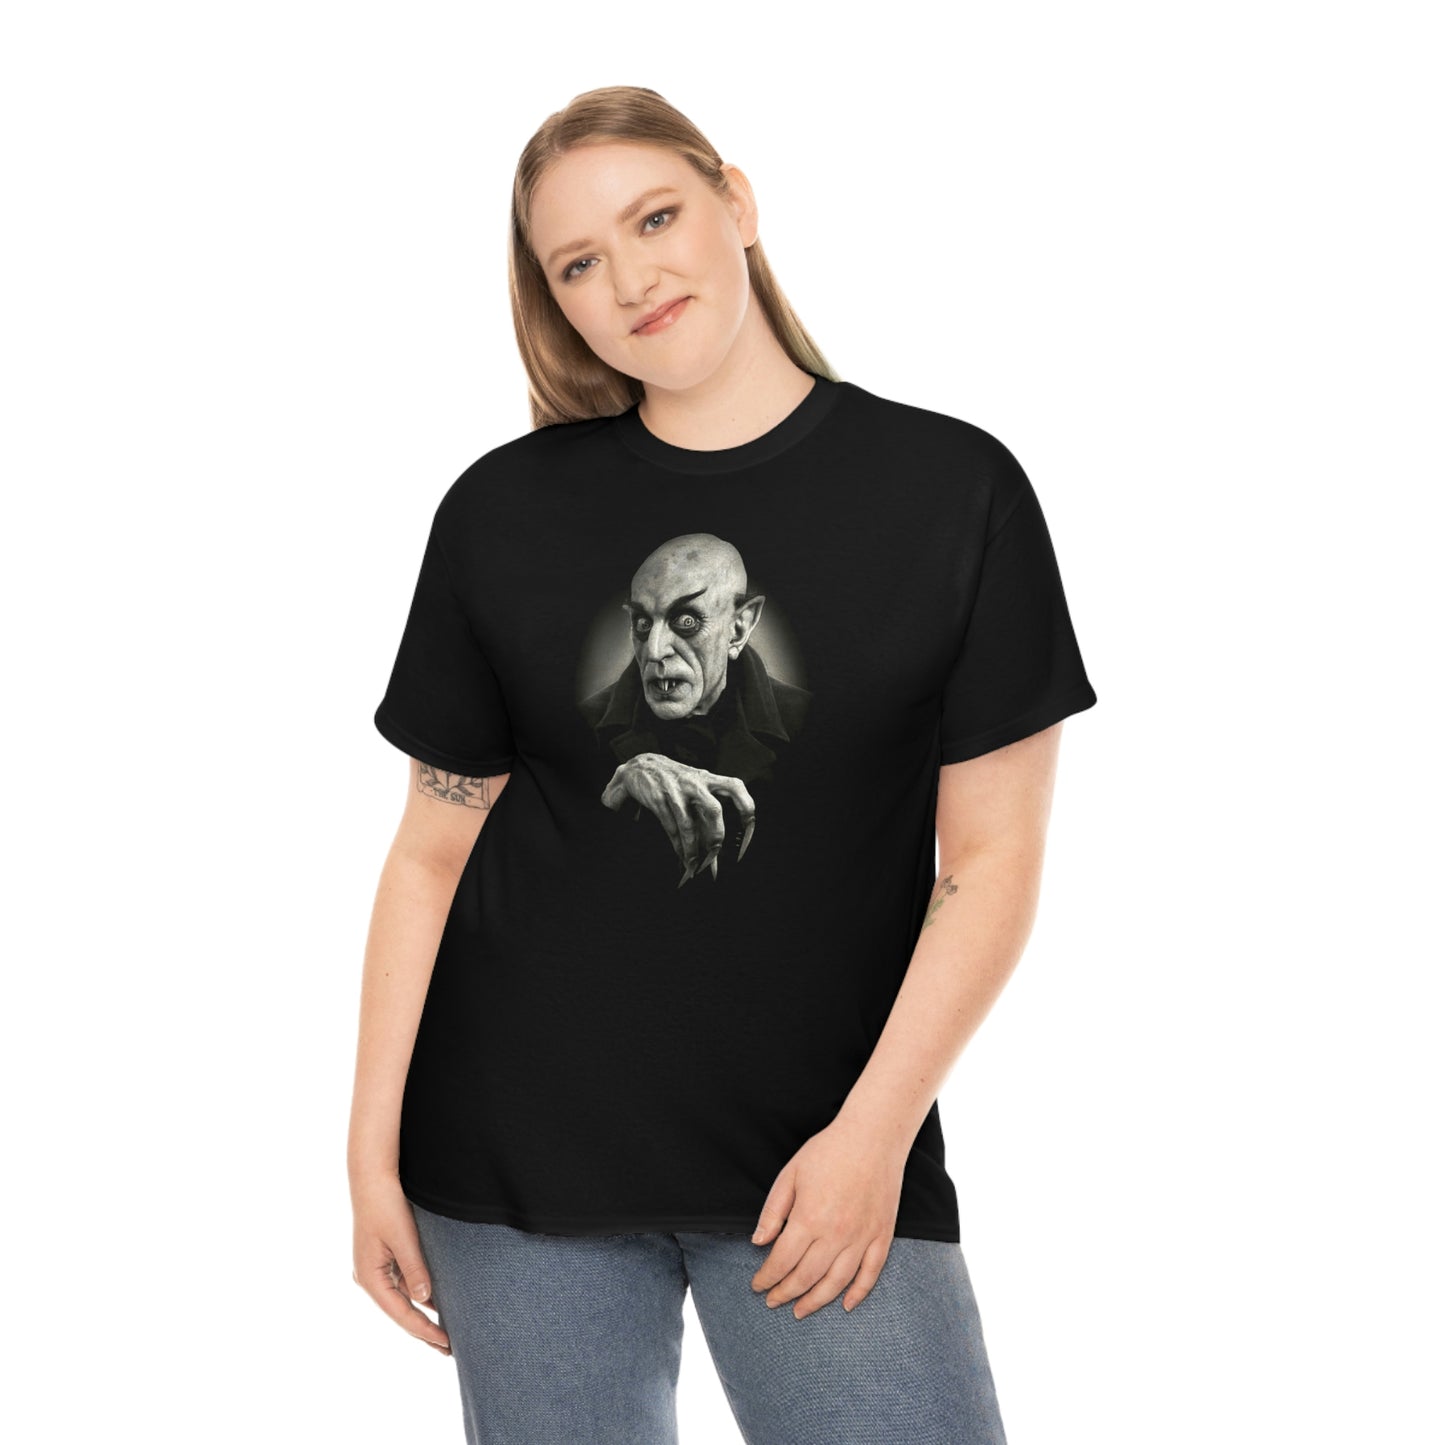 Nosferatu T-Shirt